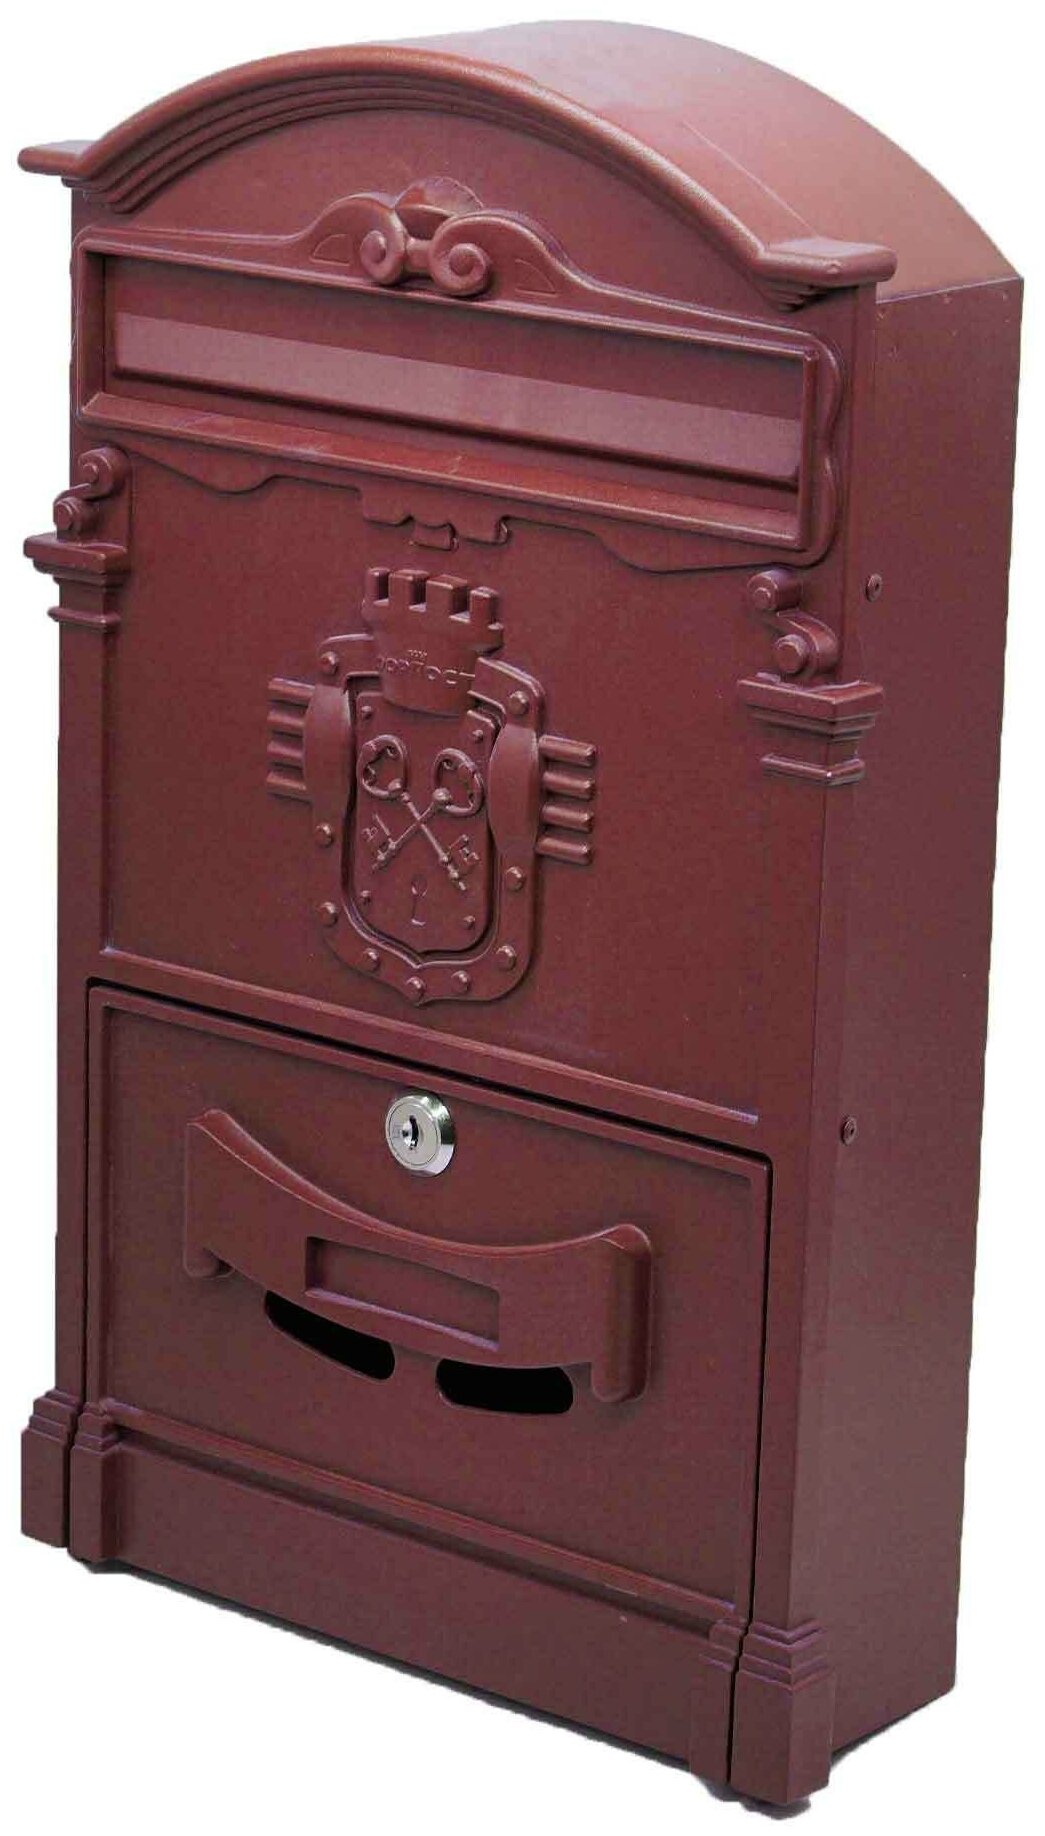 Почтовый ящик "Ключики" цвет: красное вино/ почтовый ящик металлический/ почтовый ящик с замком/ ящик почтовый/ почтовый ящик с замком уличный - фотография № 1